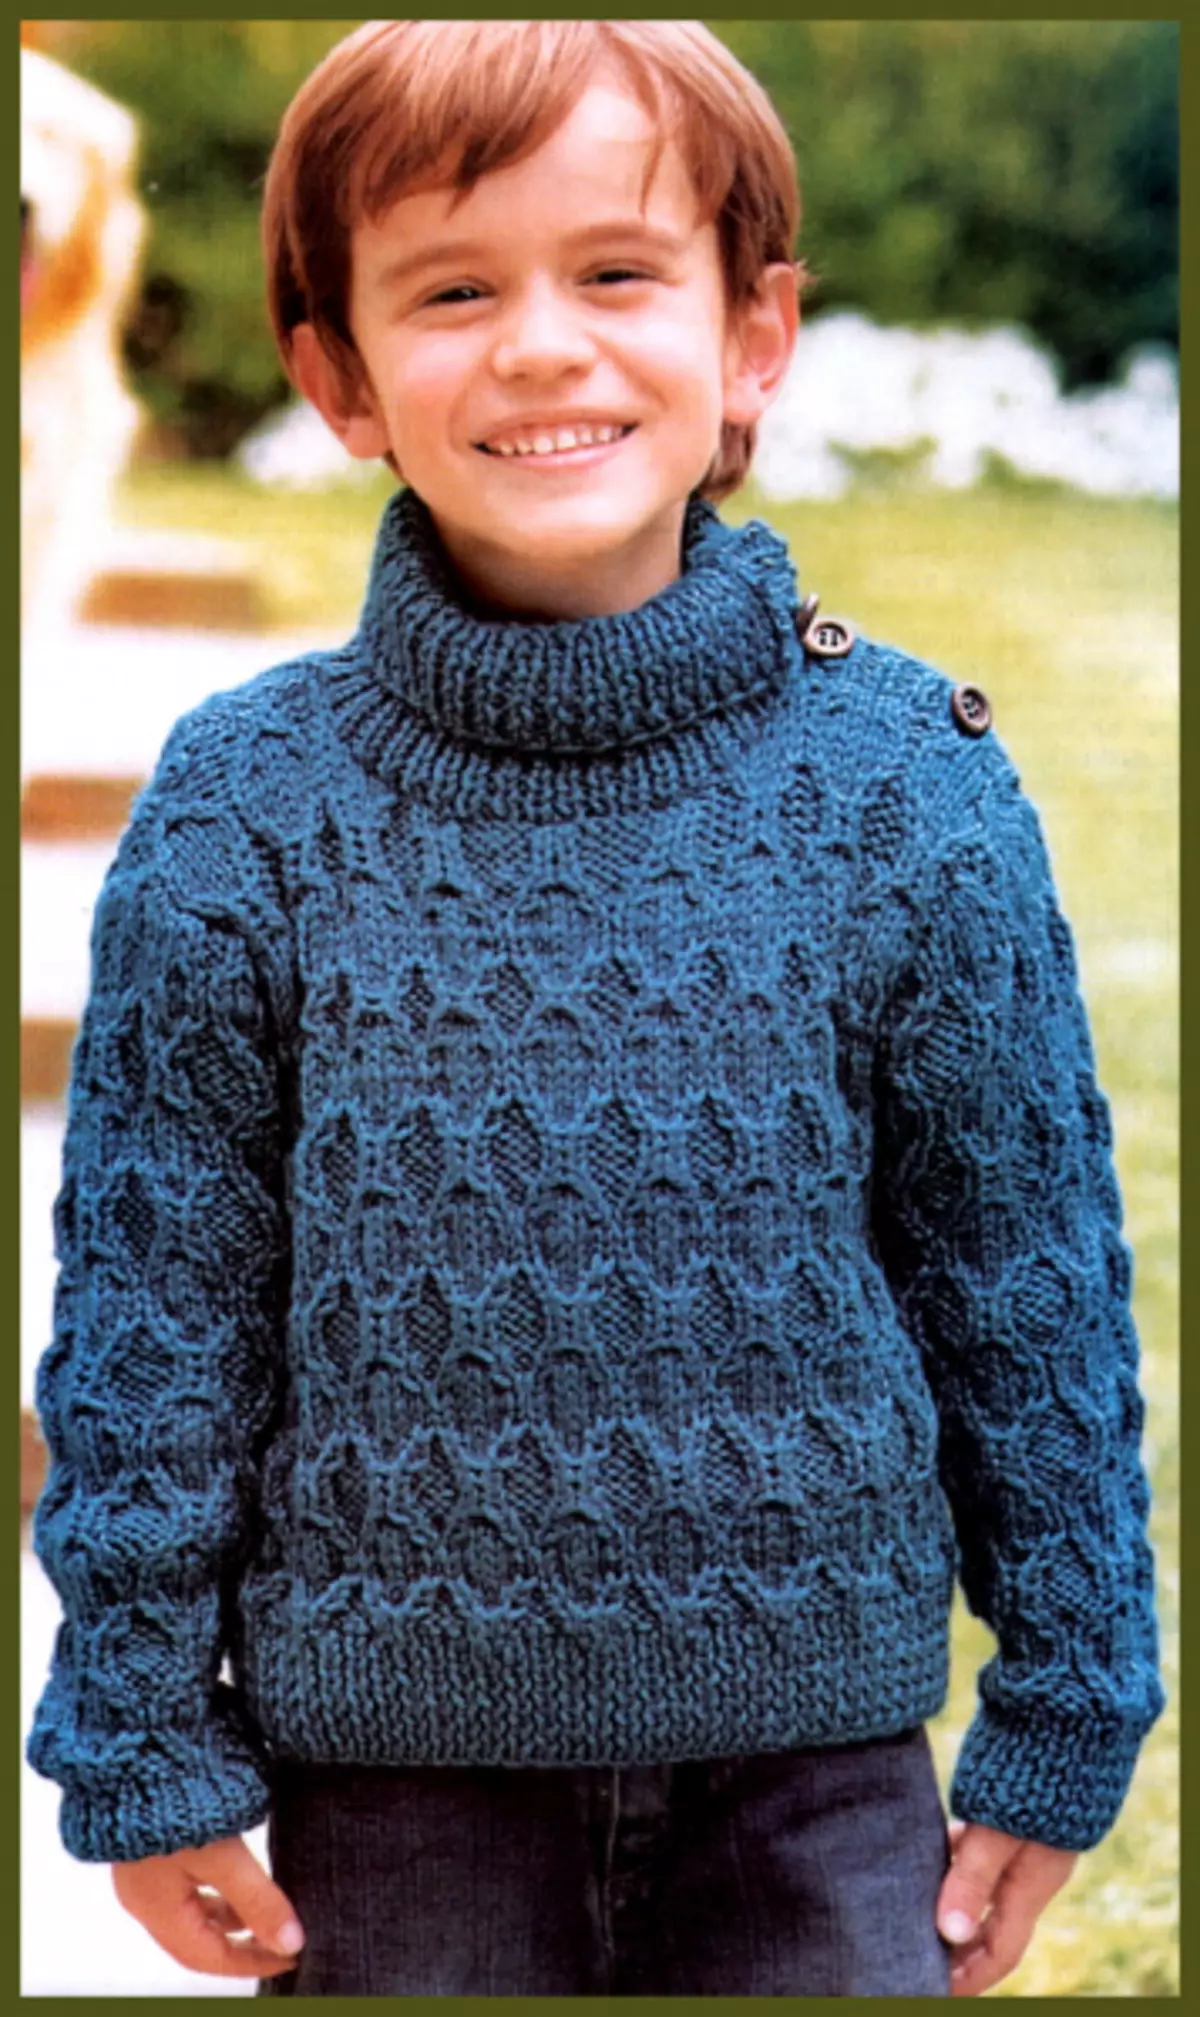 Sweater ji bo kurik bi pêlavên kincê: Rella ji bo pitikê 1-3 salî bi wêne û vîdyoyan